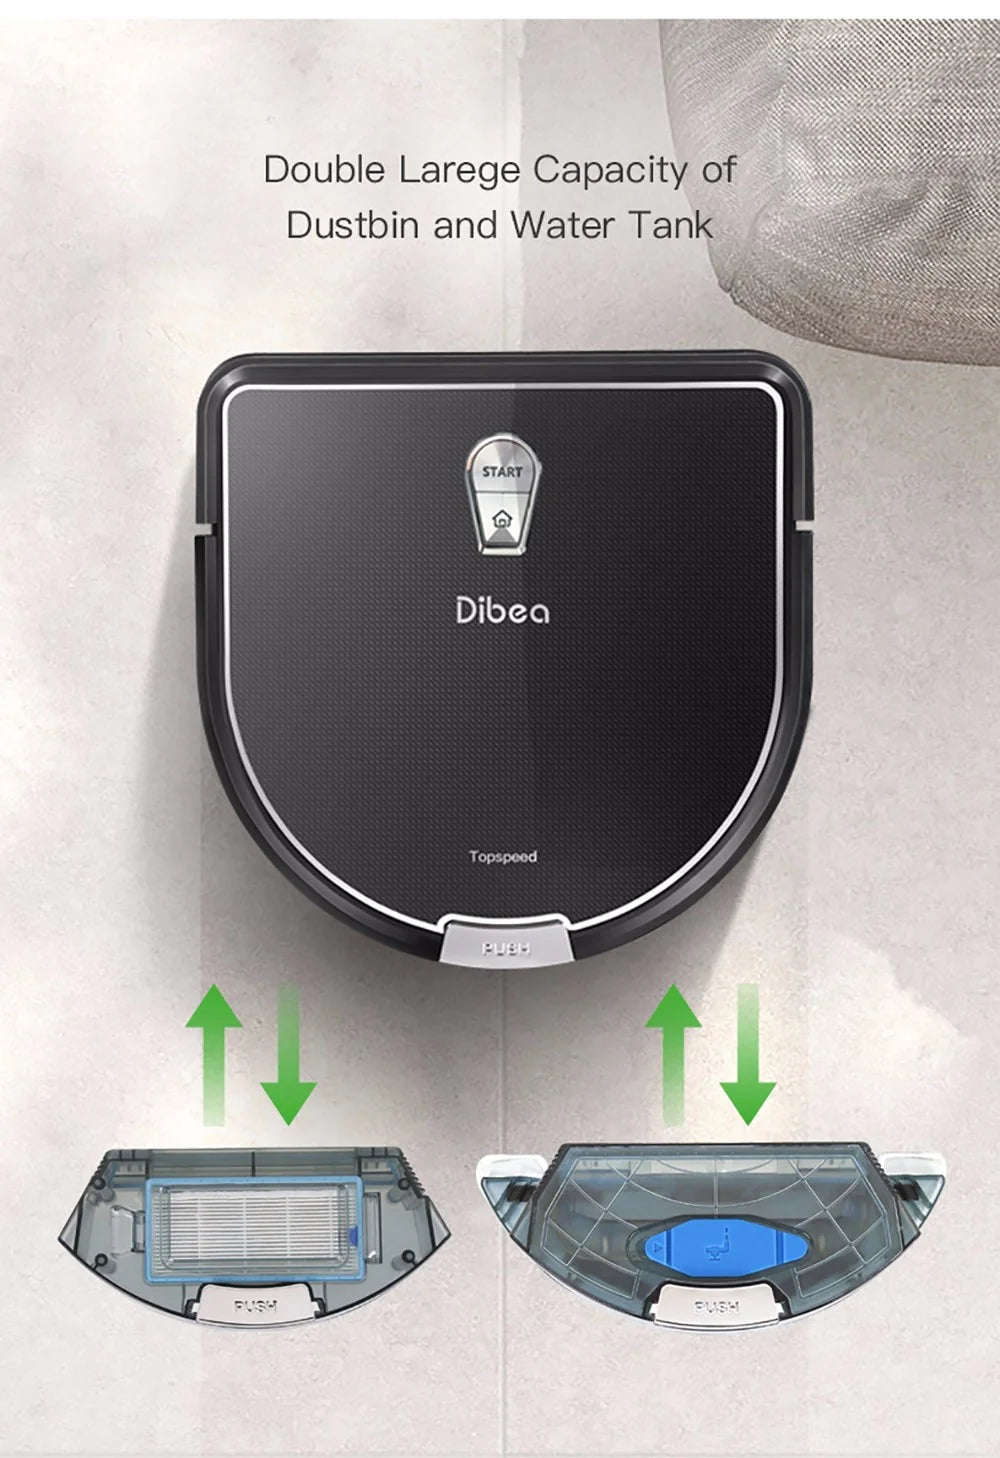 Dibea Robot Vacuum Cleaner - Black, D960